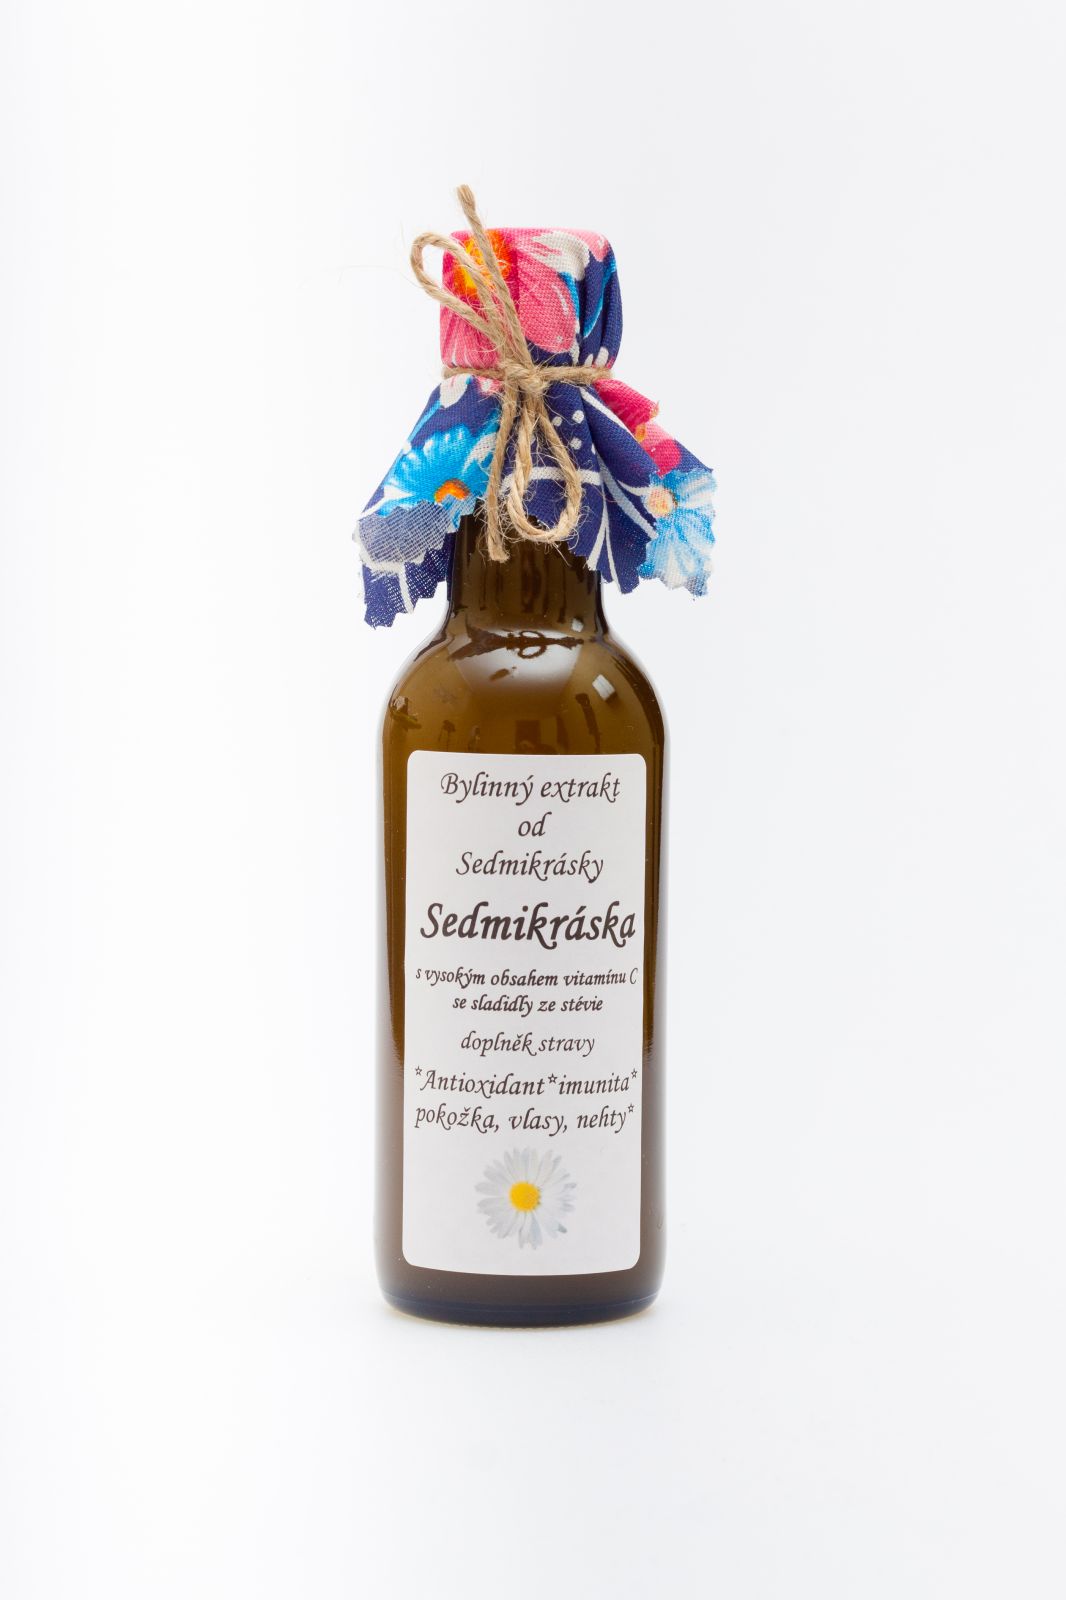 Sedmikráska bylinný extrakt Sedmikráska 250ml antioxidant, imunita, pokožka, vlasy a nehty doplněk stravy Rodinná farma Sedmikráska